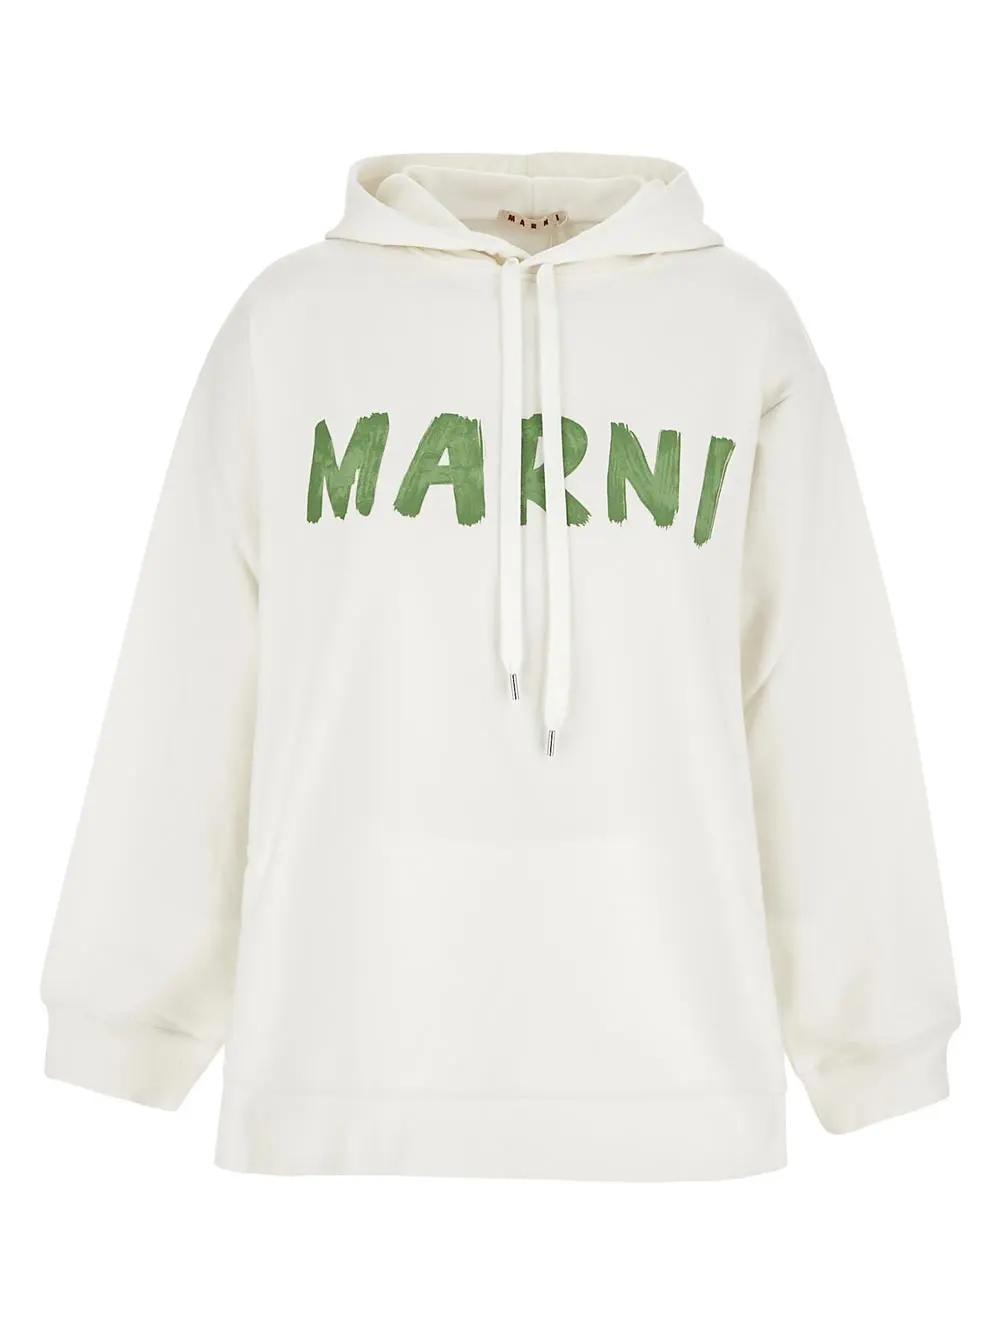 Marni Cotton Logo Sweatshirt